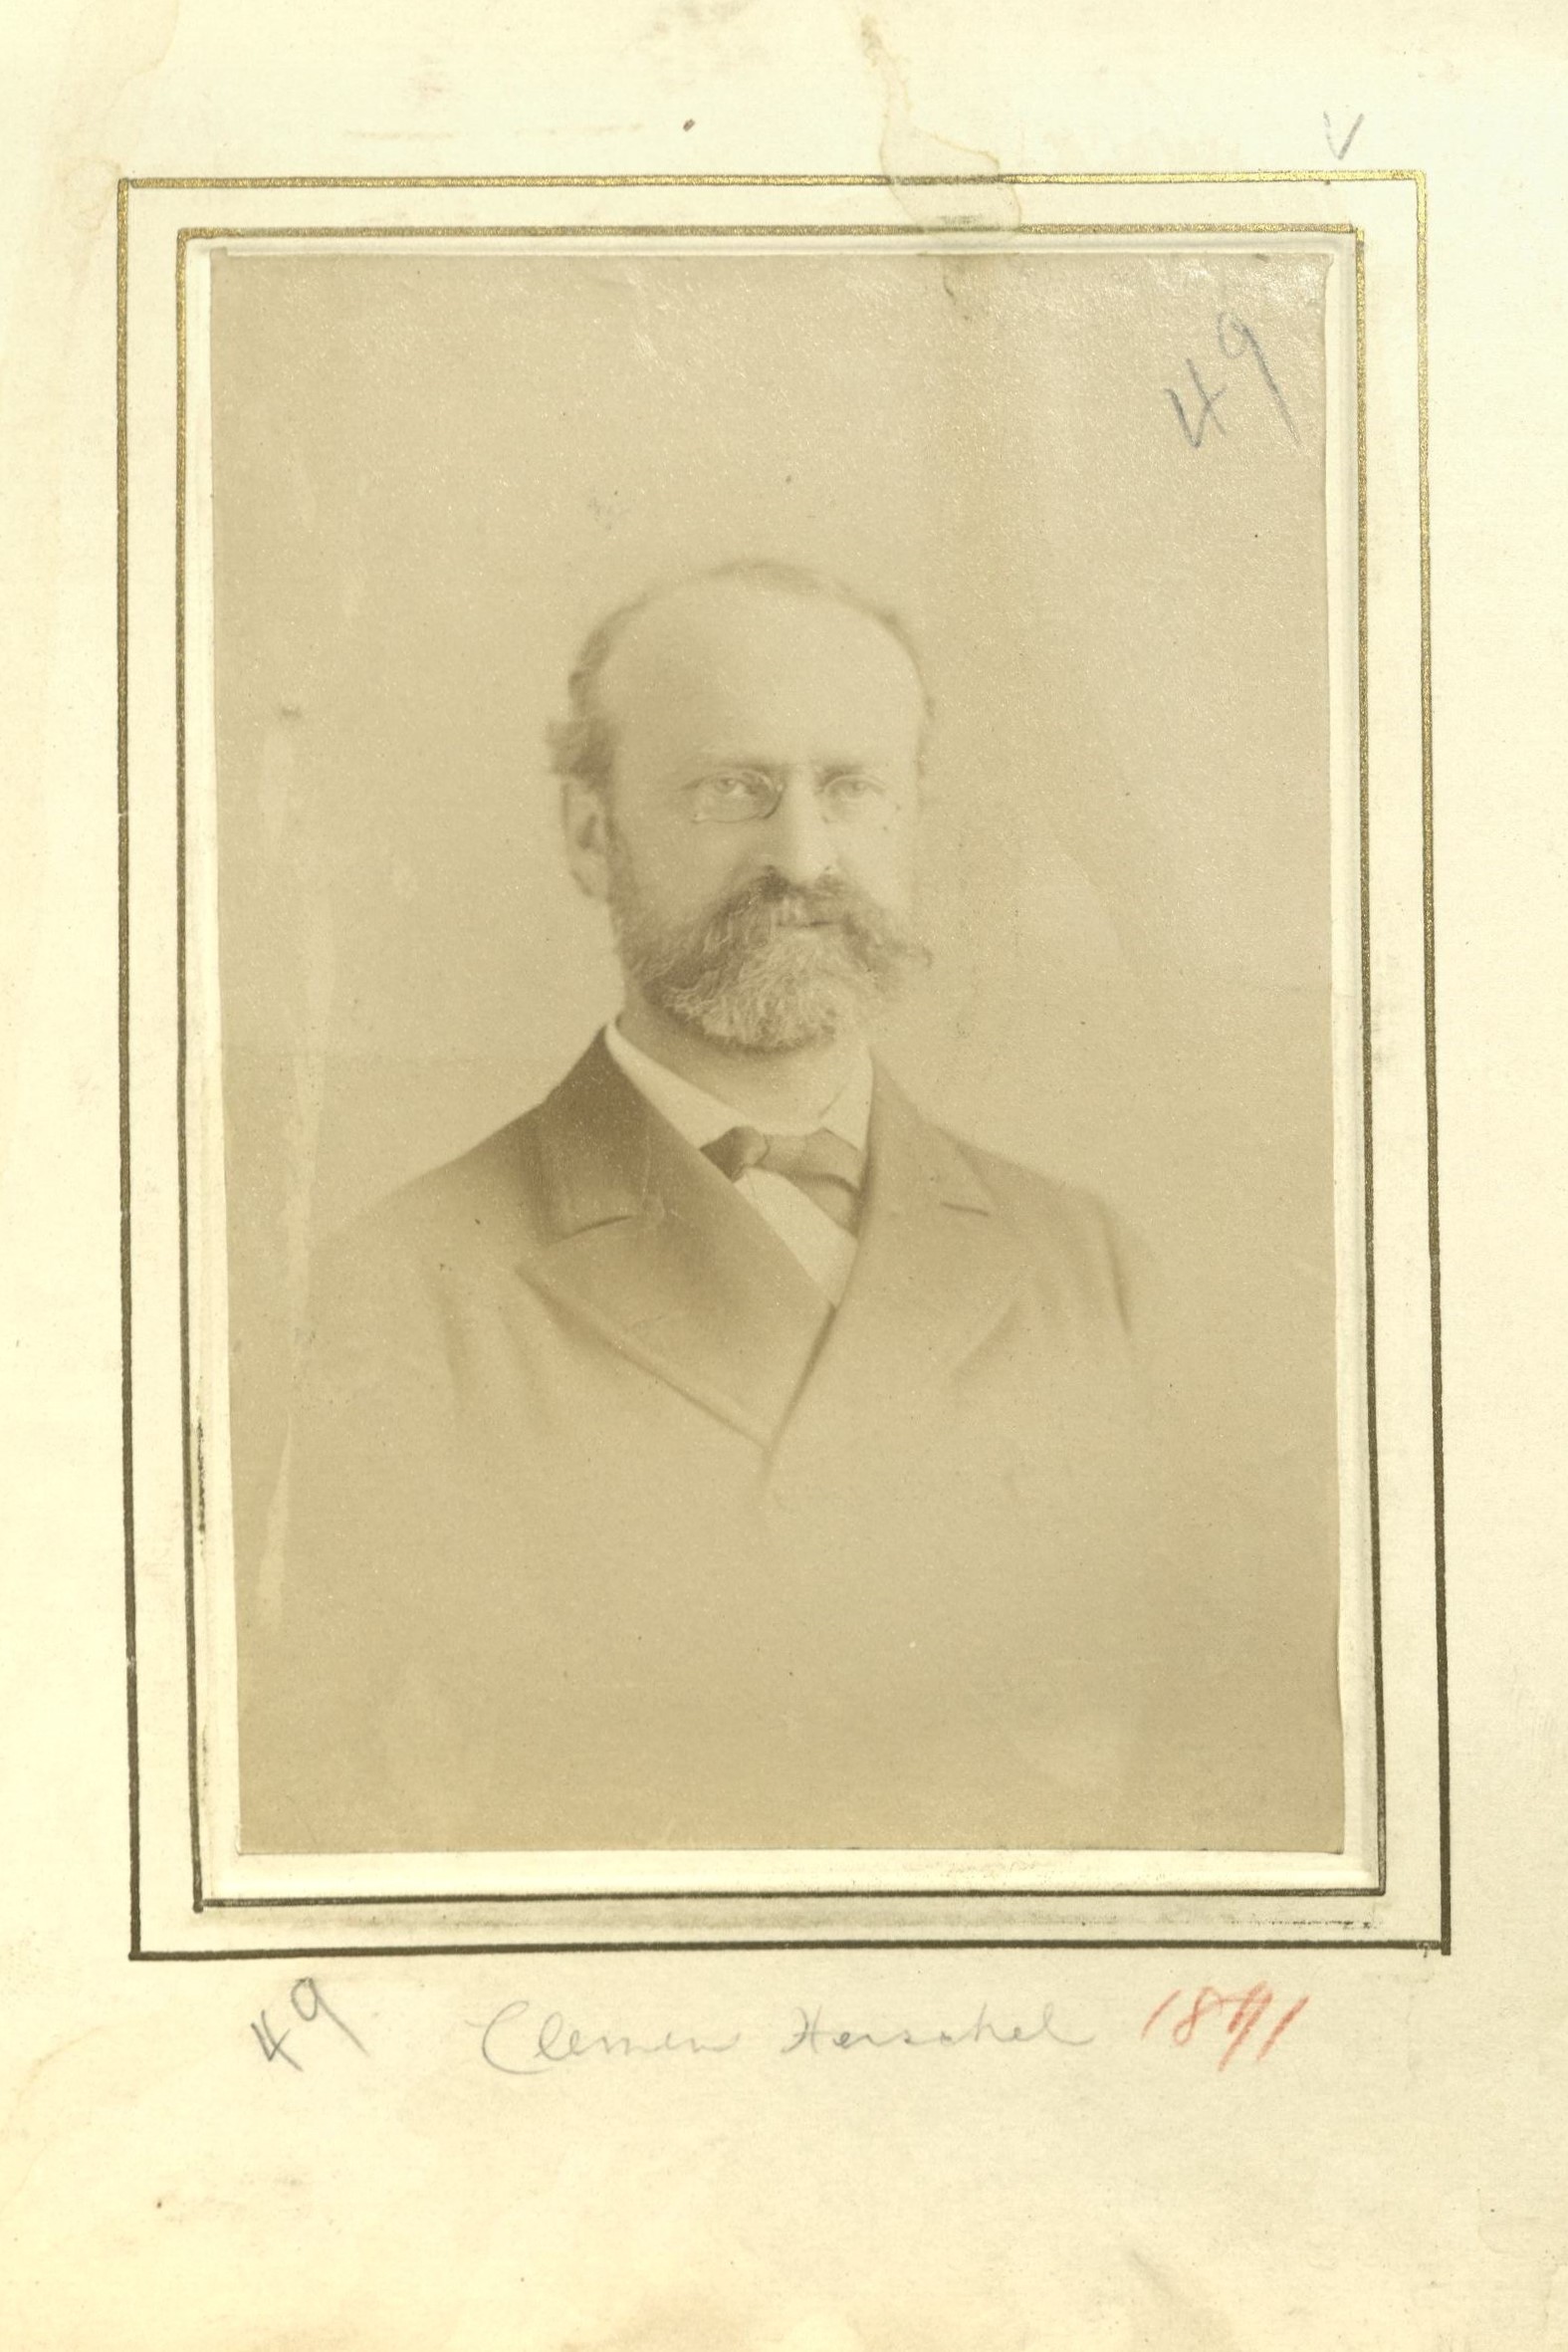 Member portrait of Clemens Herschel